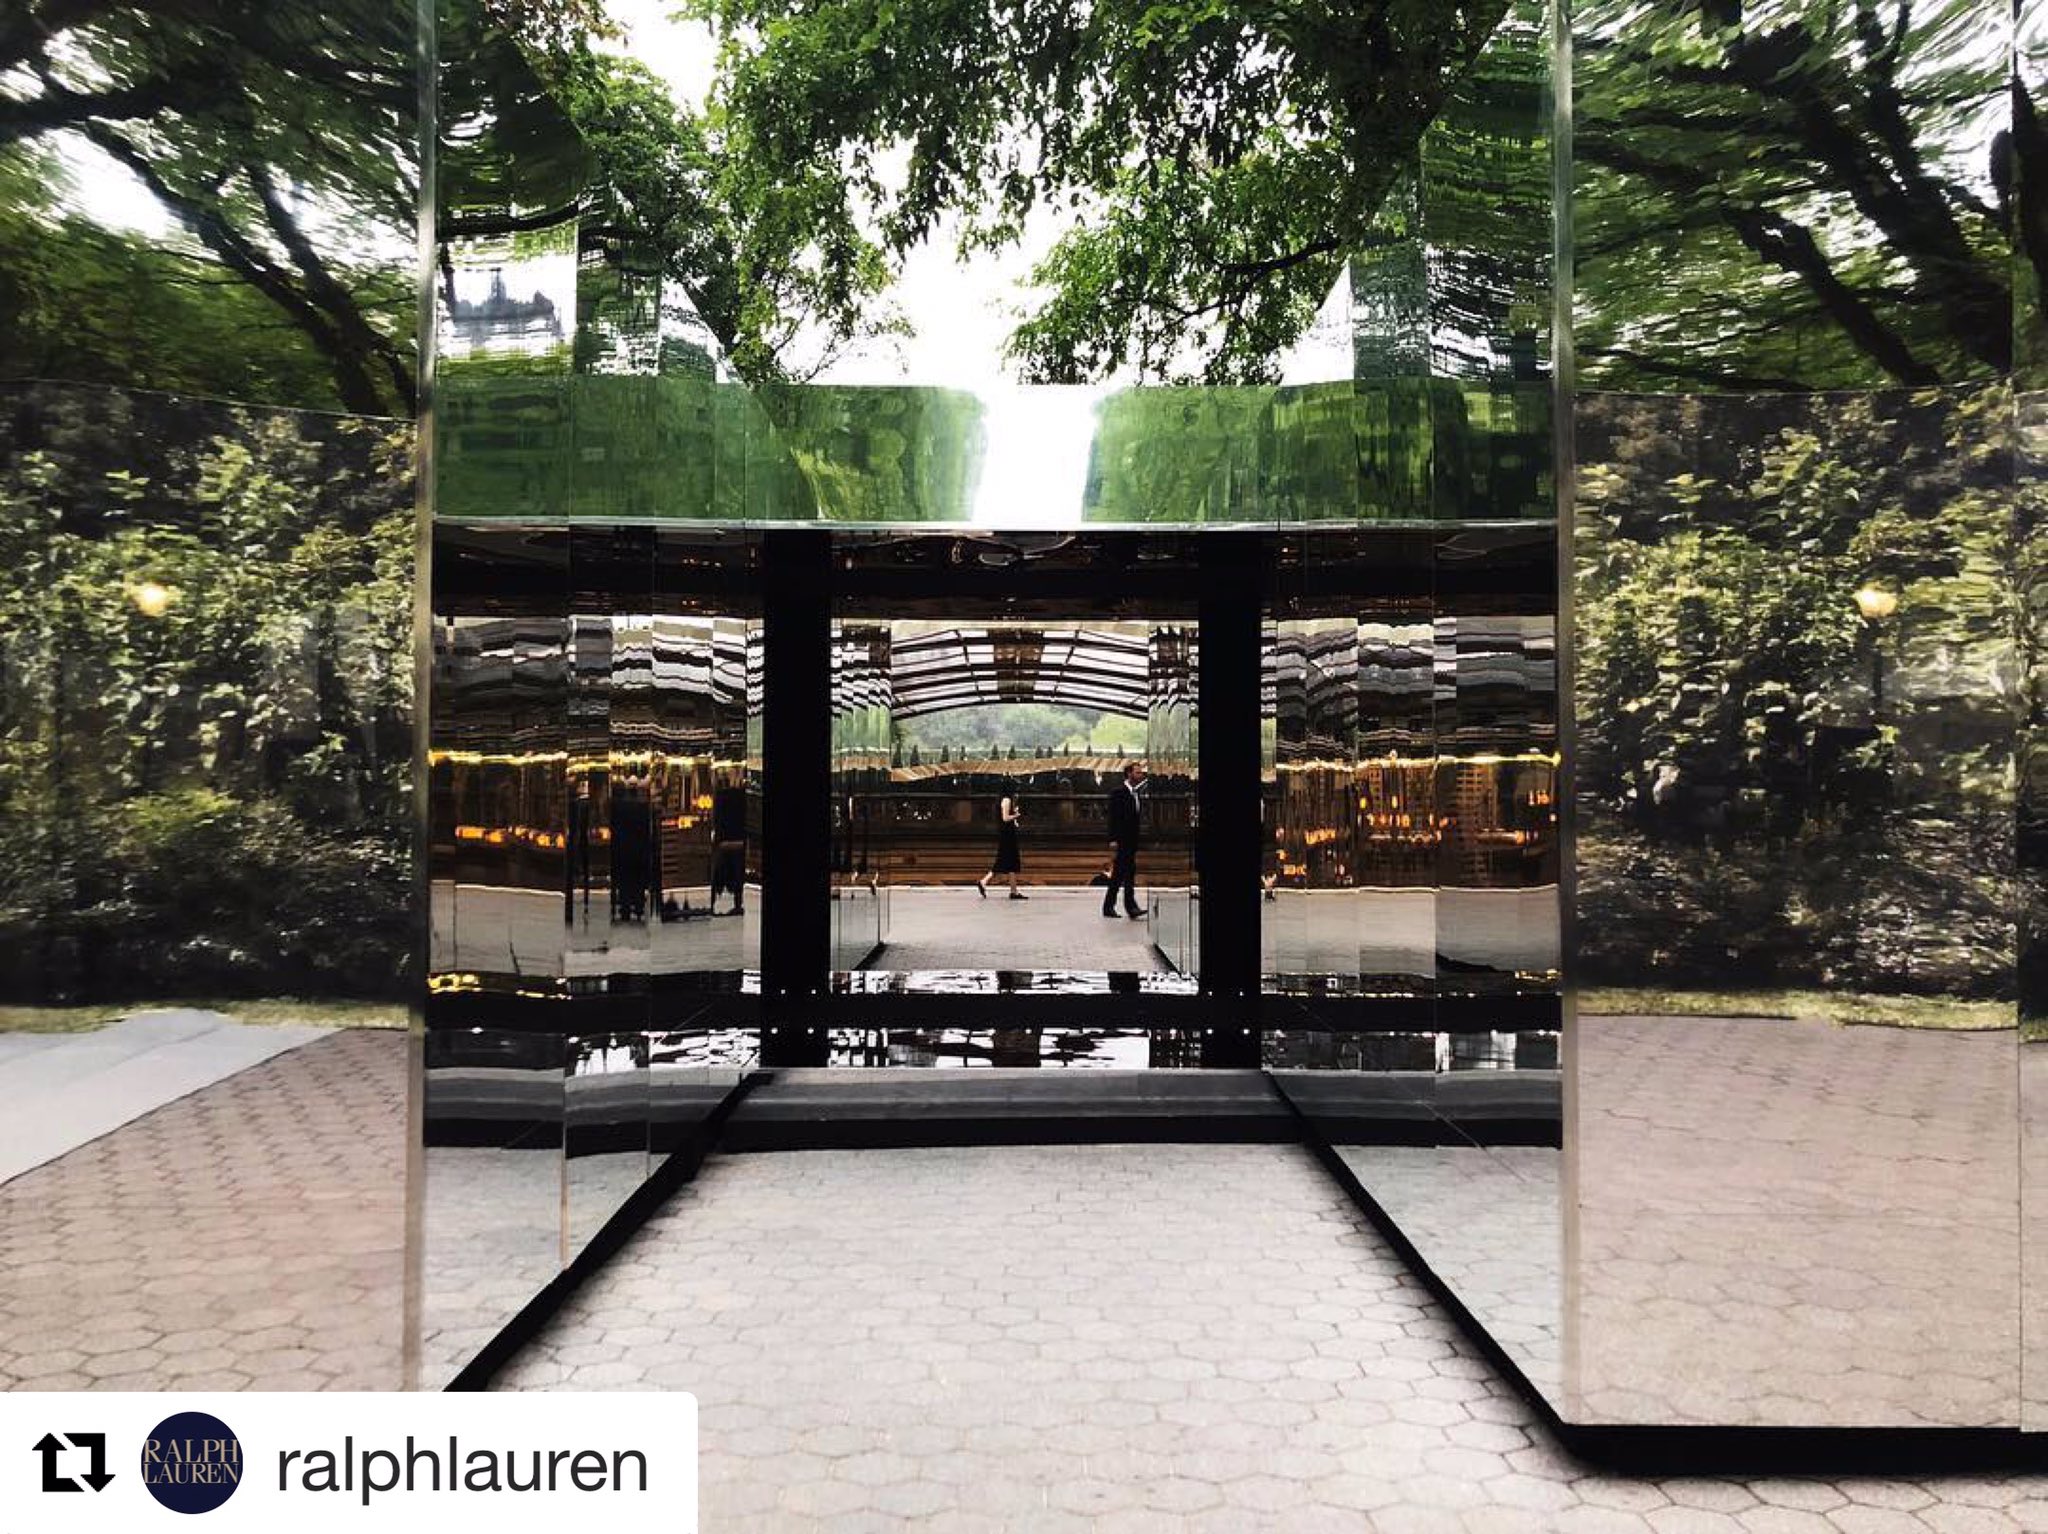 Ralph Lauren on X: As part of the #RL50 celebration, #RalphLauren